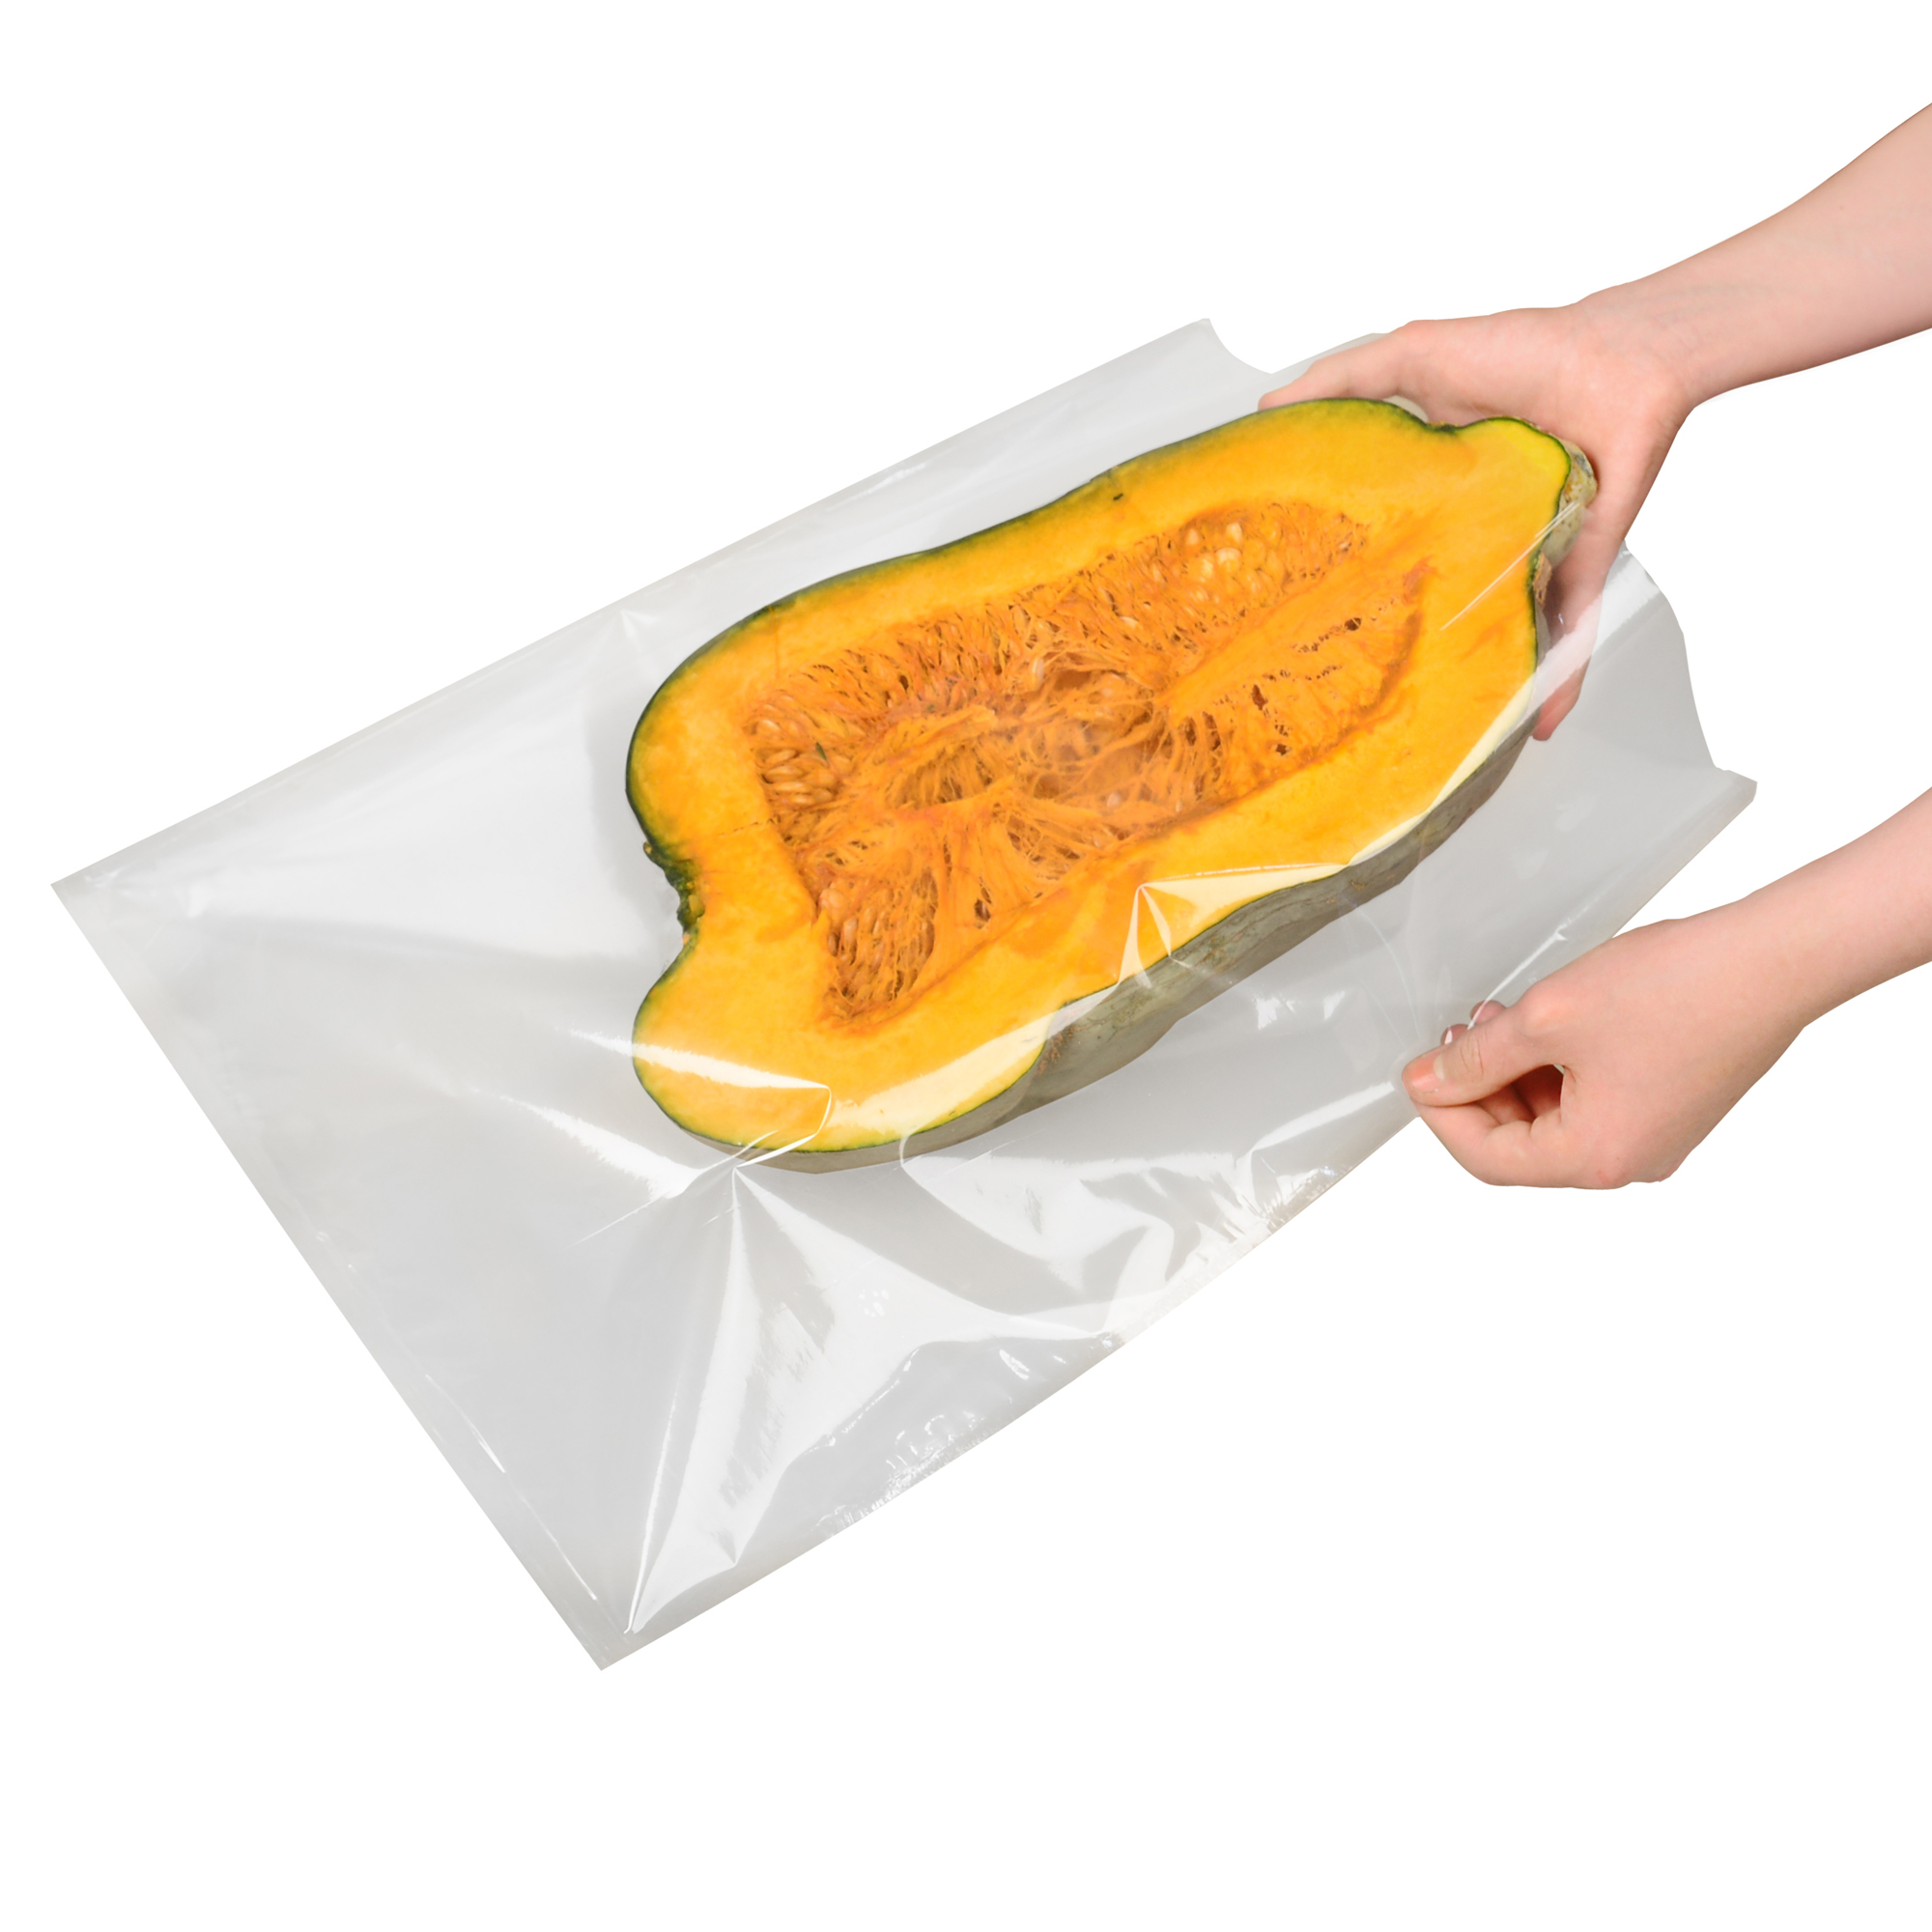 Bolsas para envasar al vacío Lidl: la solución perfecta para conservar tus alimentos frescos por más tiempo